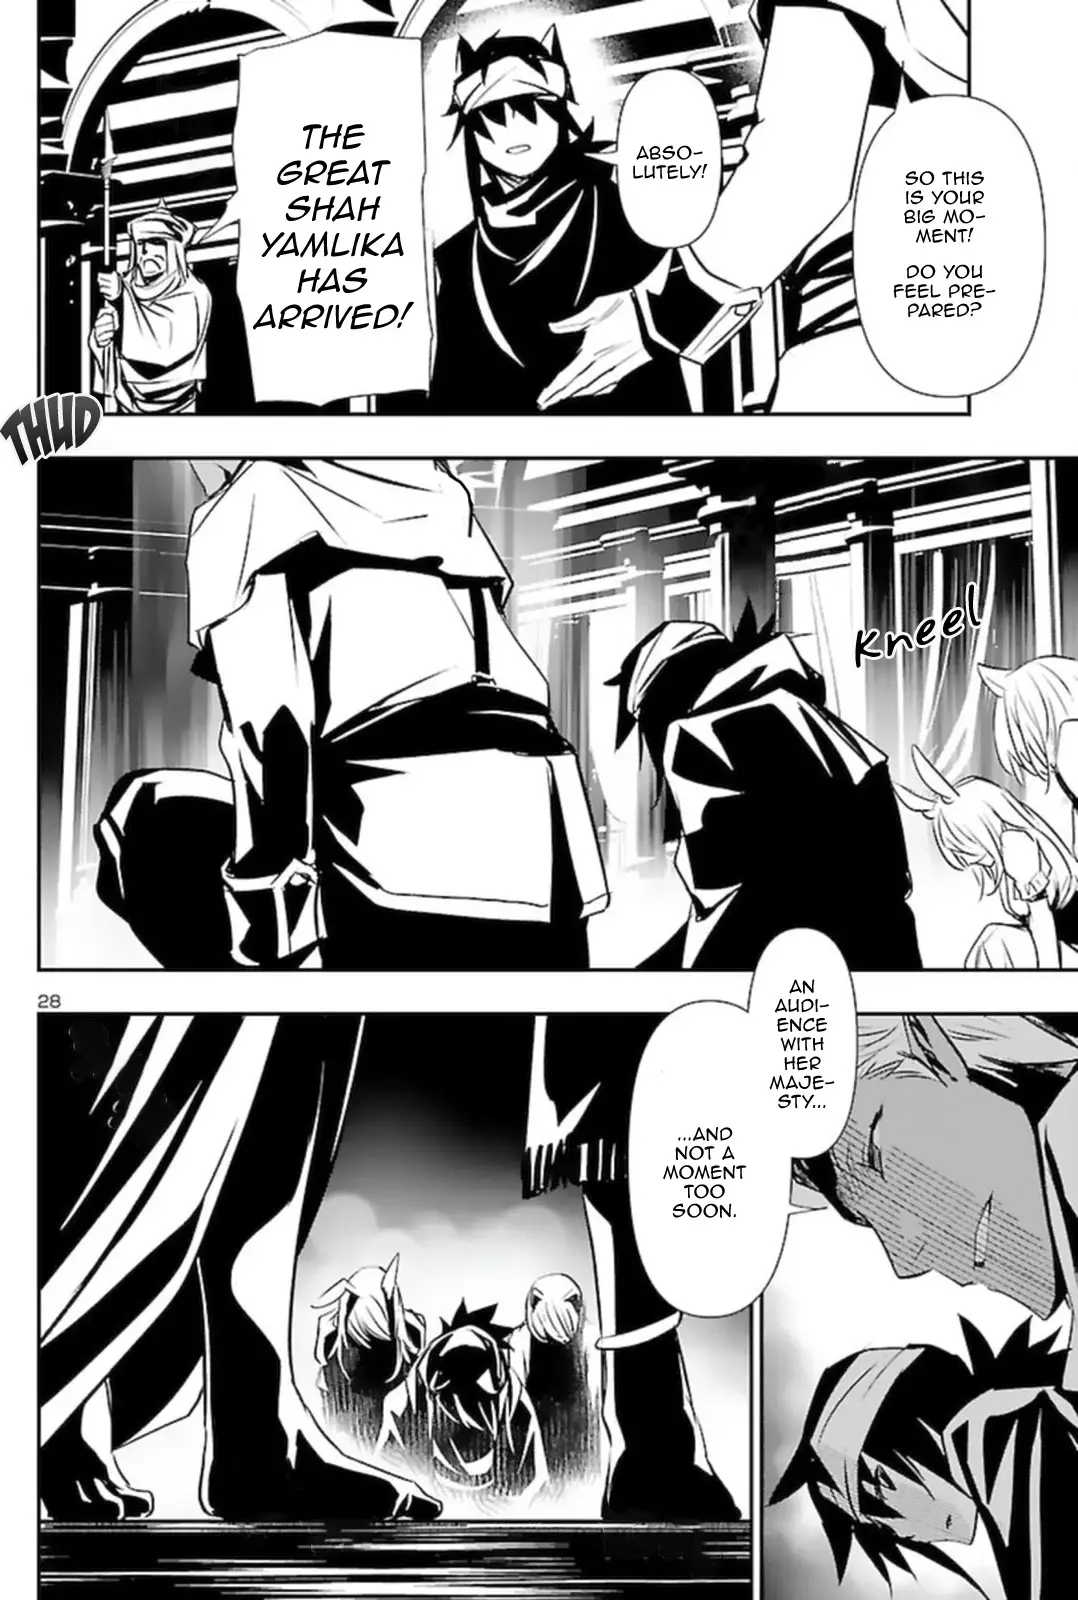 Shinju no Nectar - 57 page 28